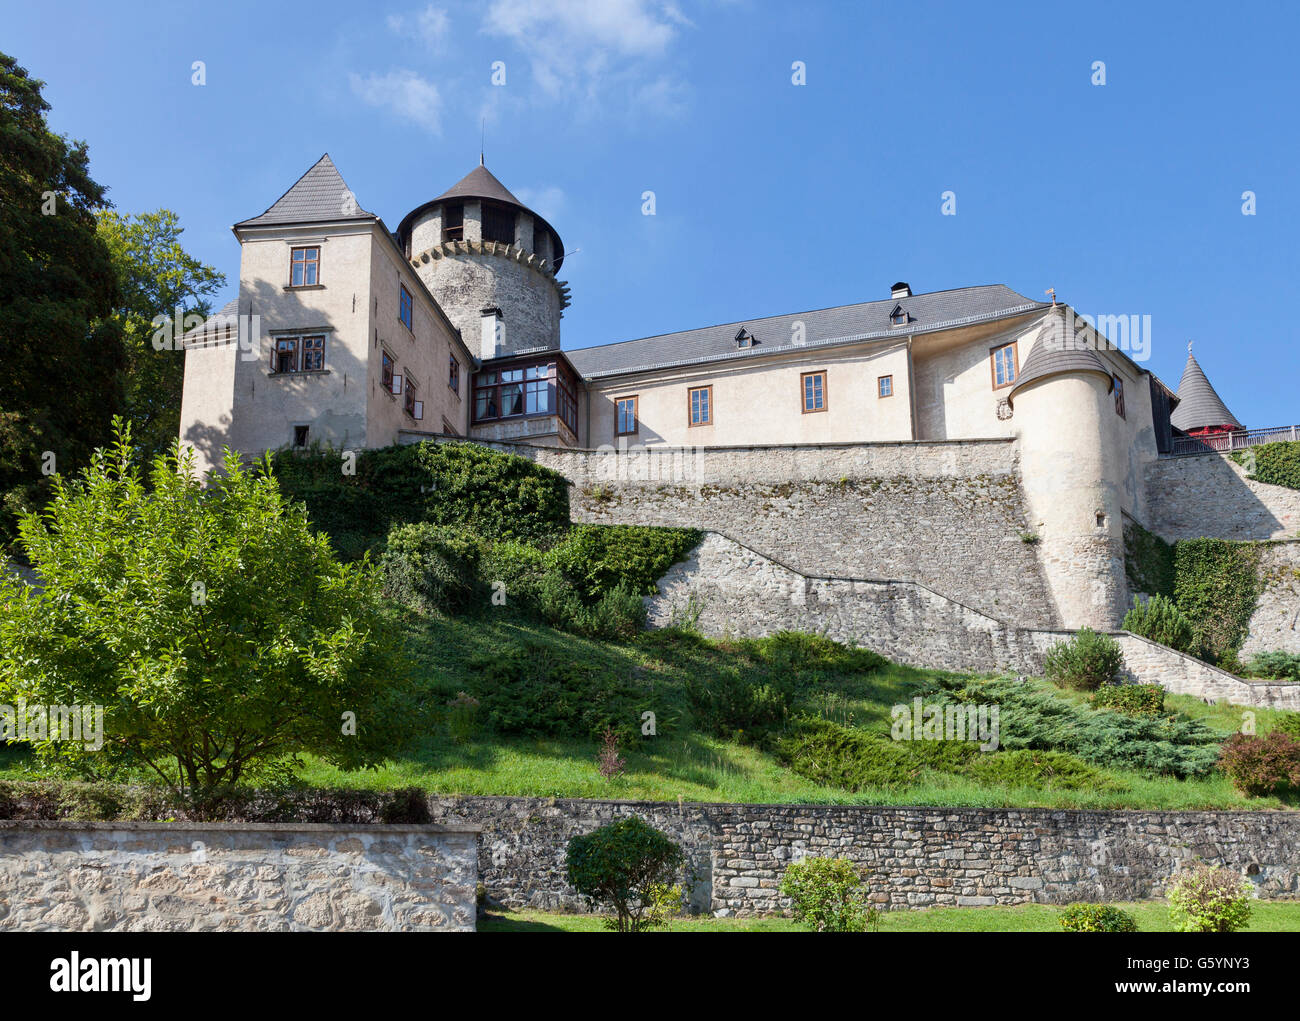 Castle in Litschau, Waldviertel, Forest Quarter, Lower Austria, Austria, Europe Stock Photo